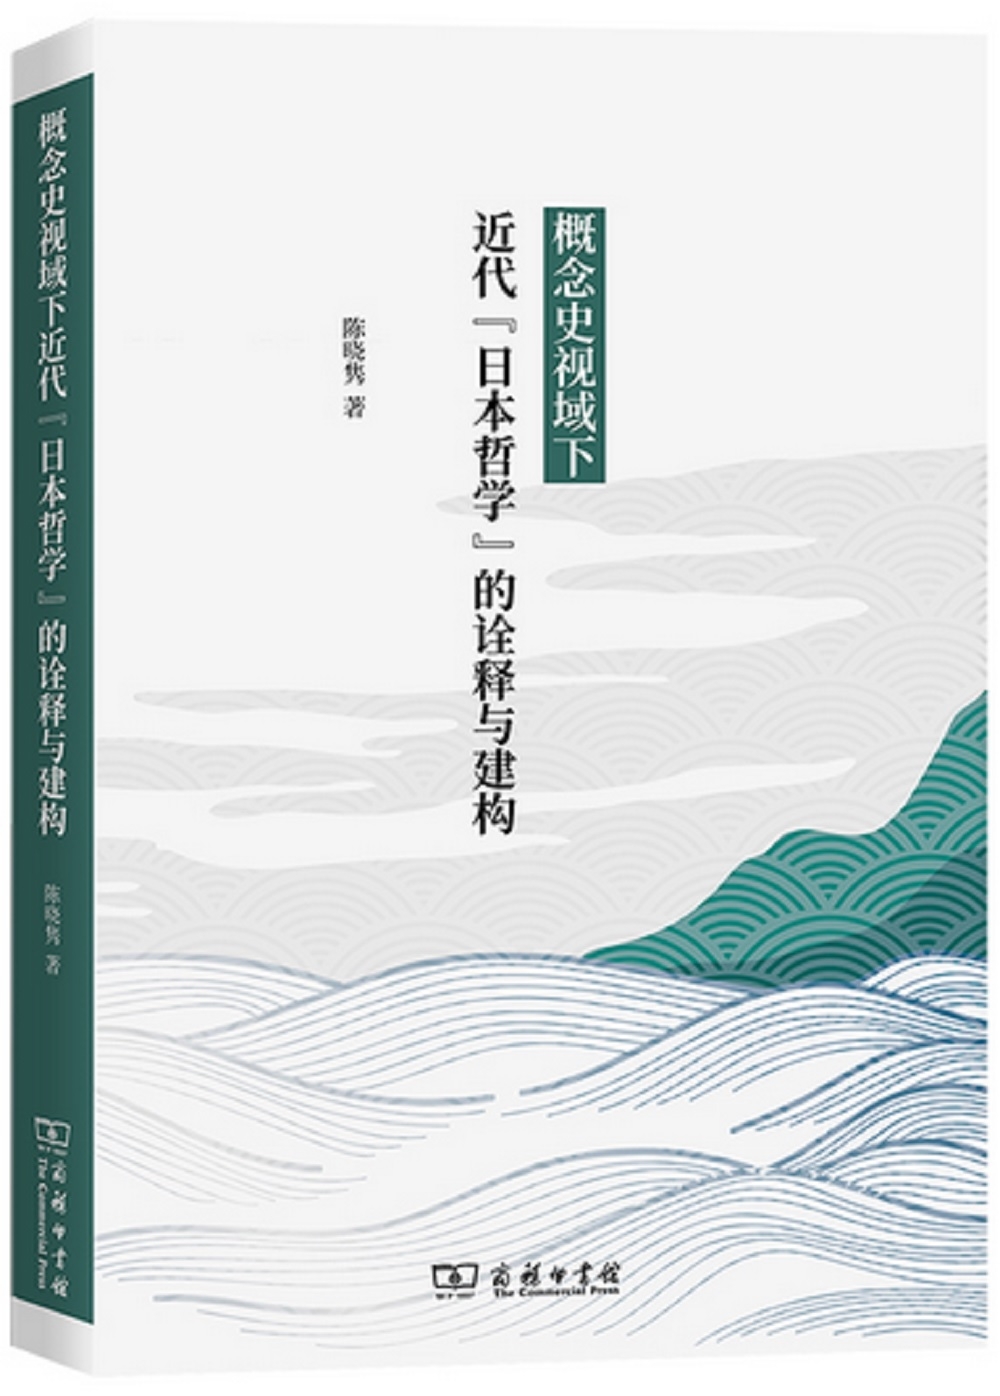 概念史視域下近代“日本哲學”的詮釋與建構